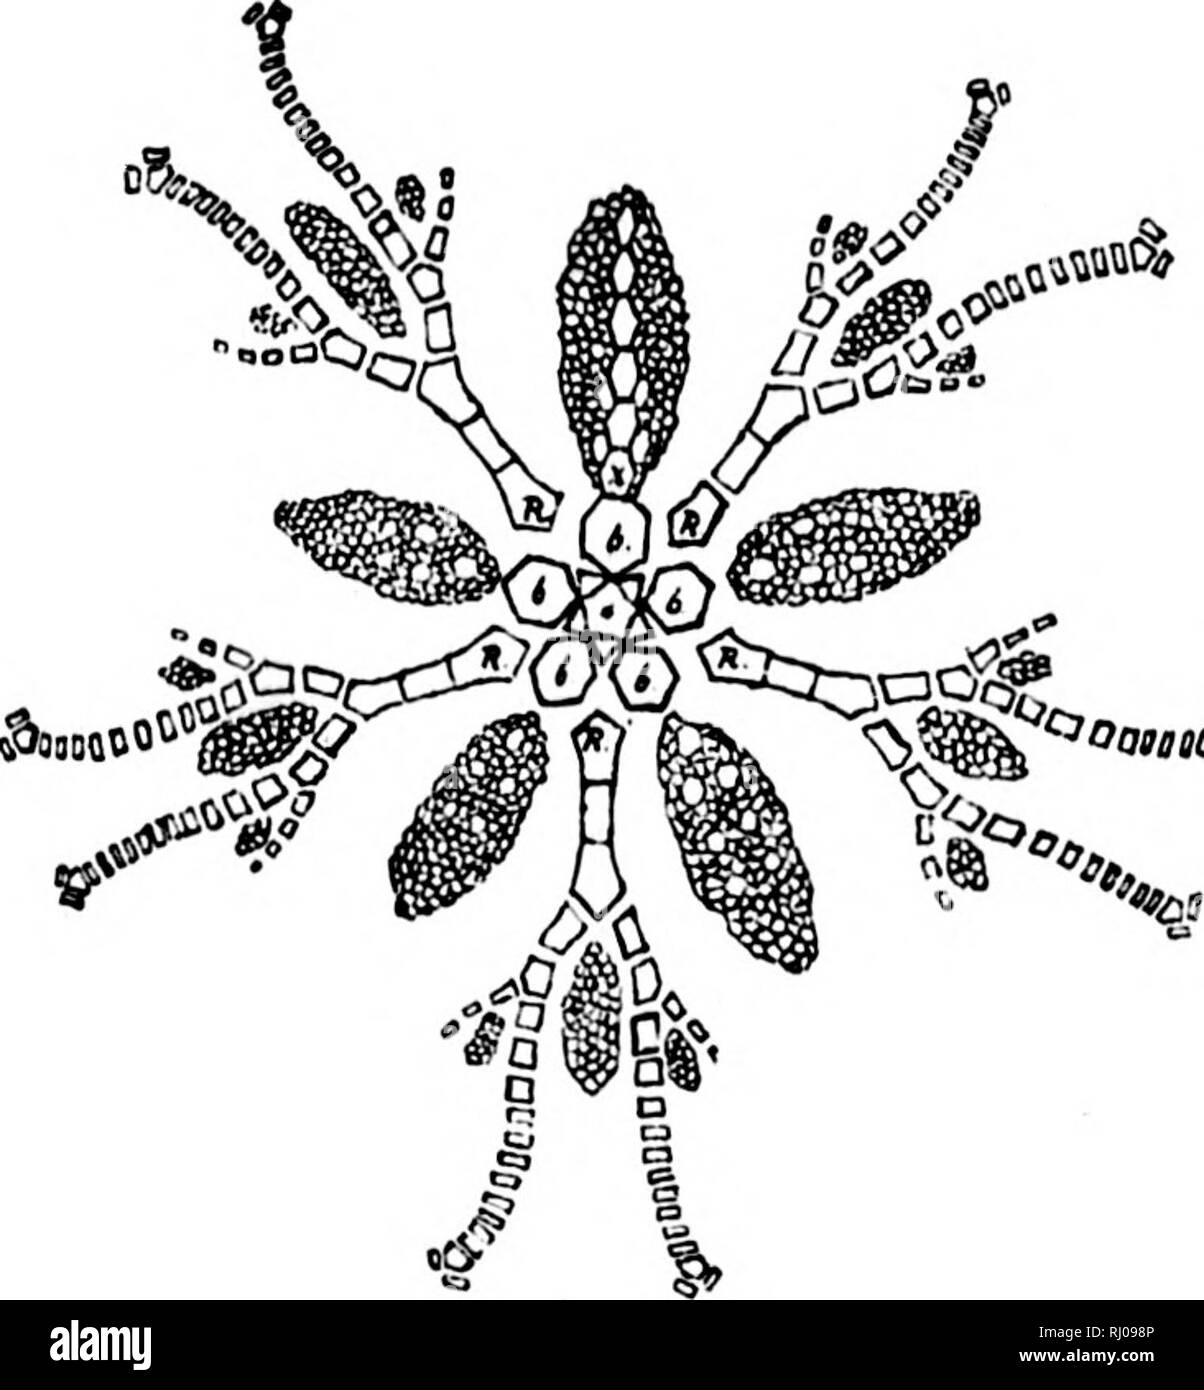 . Die Nordamerikanischen Crinoidea Camerata [microform]. , Fossile Crinoidea; Crinoïdes Fossilien. 174 Die CKINOIDKA CAMEBATA VON NORDAMERIKA. Oaiiio^ im wachsenden Crinoid in großer Zahl eingeführt zu den primären interradials und interdistichals, sowie zwischen diesen und den basals, radials und brachials. Die interdistichal interrndial und Räume in dieser Gruppe sind sehr deprimiert, und die Platten der Nachfolger des radials gefaltet in auffälligen Rippen. Diese Struktur, mit der mehr oder weniger rudimentär Charakter der zwischengeschalteten Platten kombiniert, ist so einzigartig und bemerkenswert, dass alle Othe Stockfoto